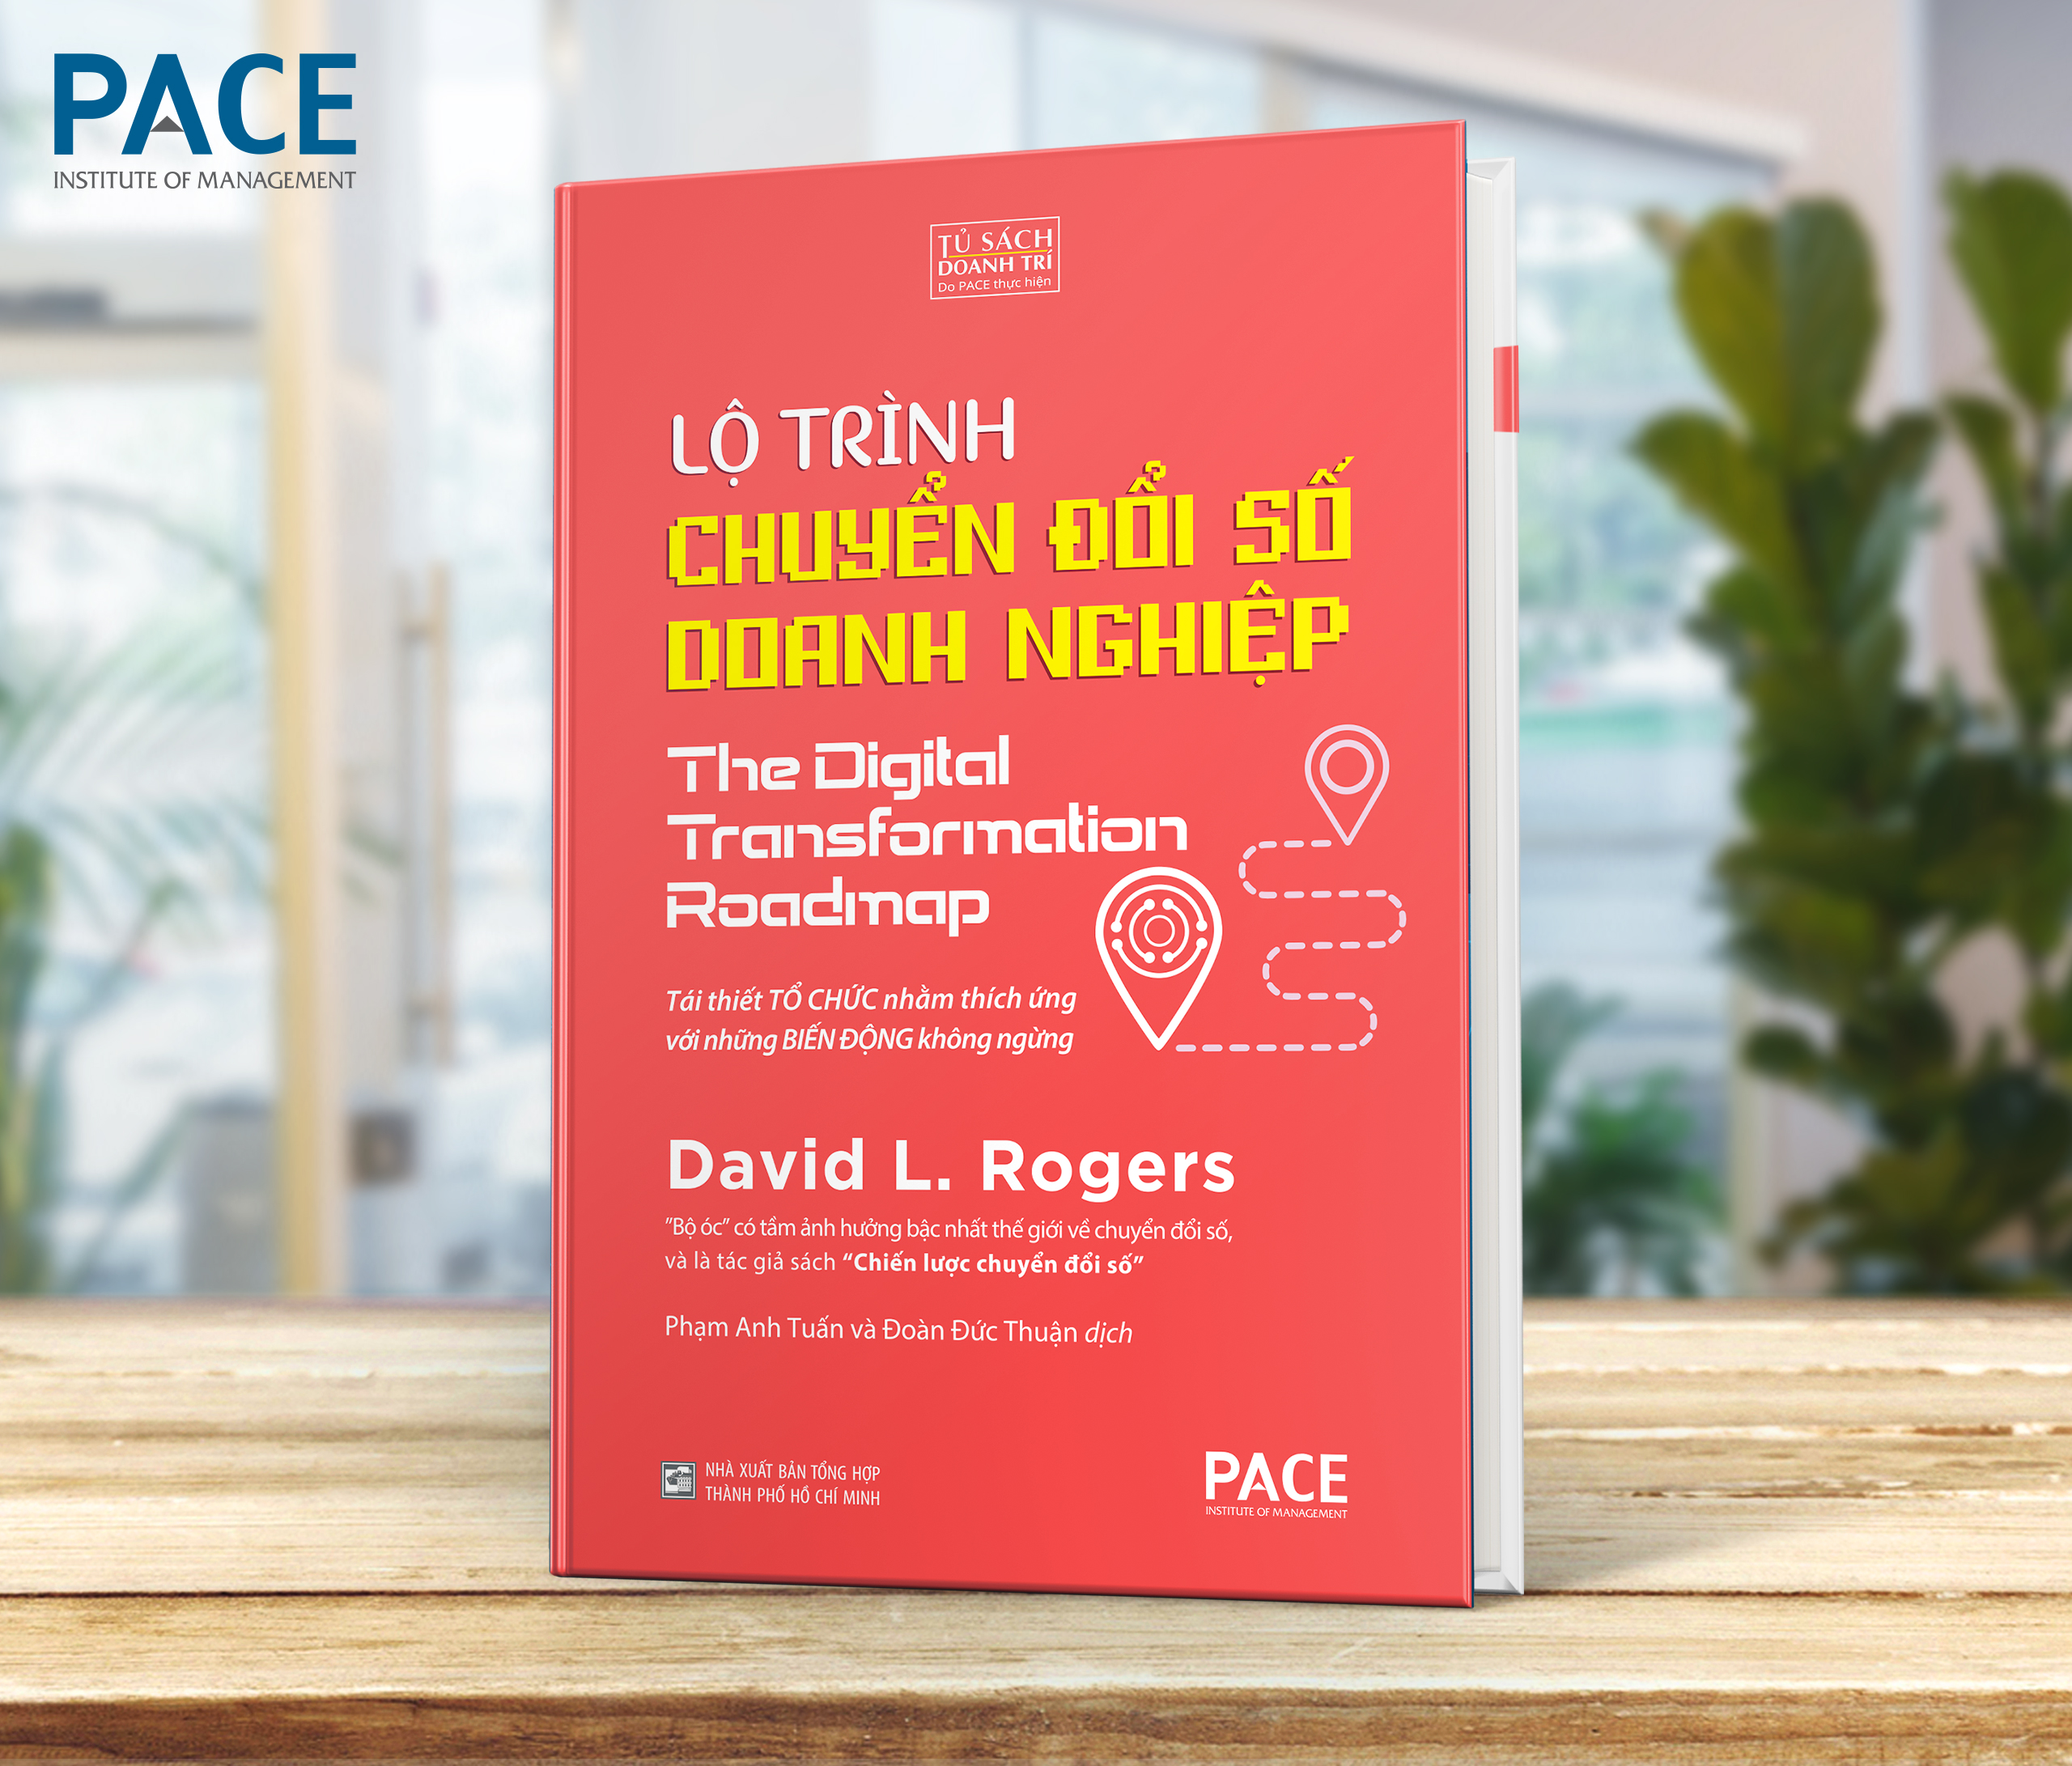 [Bìa cứng] LỘ TRÌNH CHUYỂN ĐỔI SỐ DOANH NGHIỆP - The Digital Transformation Roadmap – David L. Rogers – dịch Phạm Anh Tuấn và Đoàn Đức Thuận - PACE Books - NXB Tổng Hợp TP.HCM 